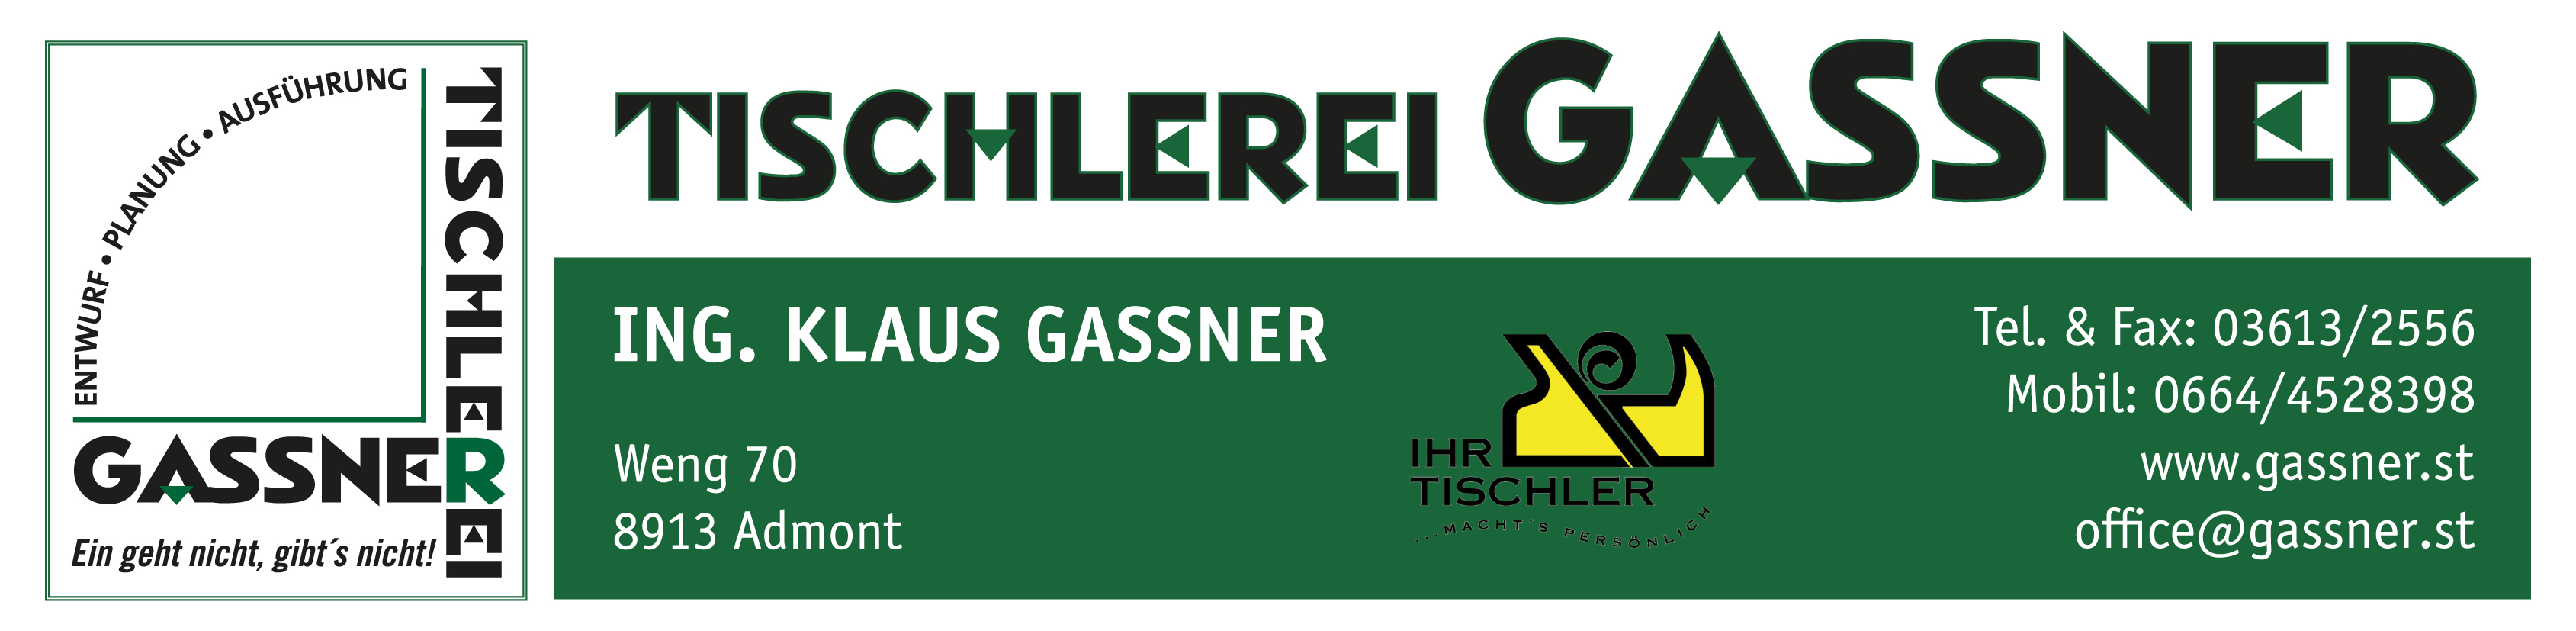 Tischlerei Gassner